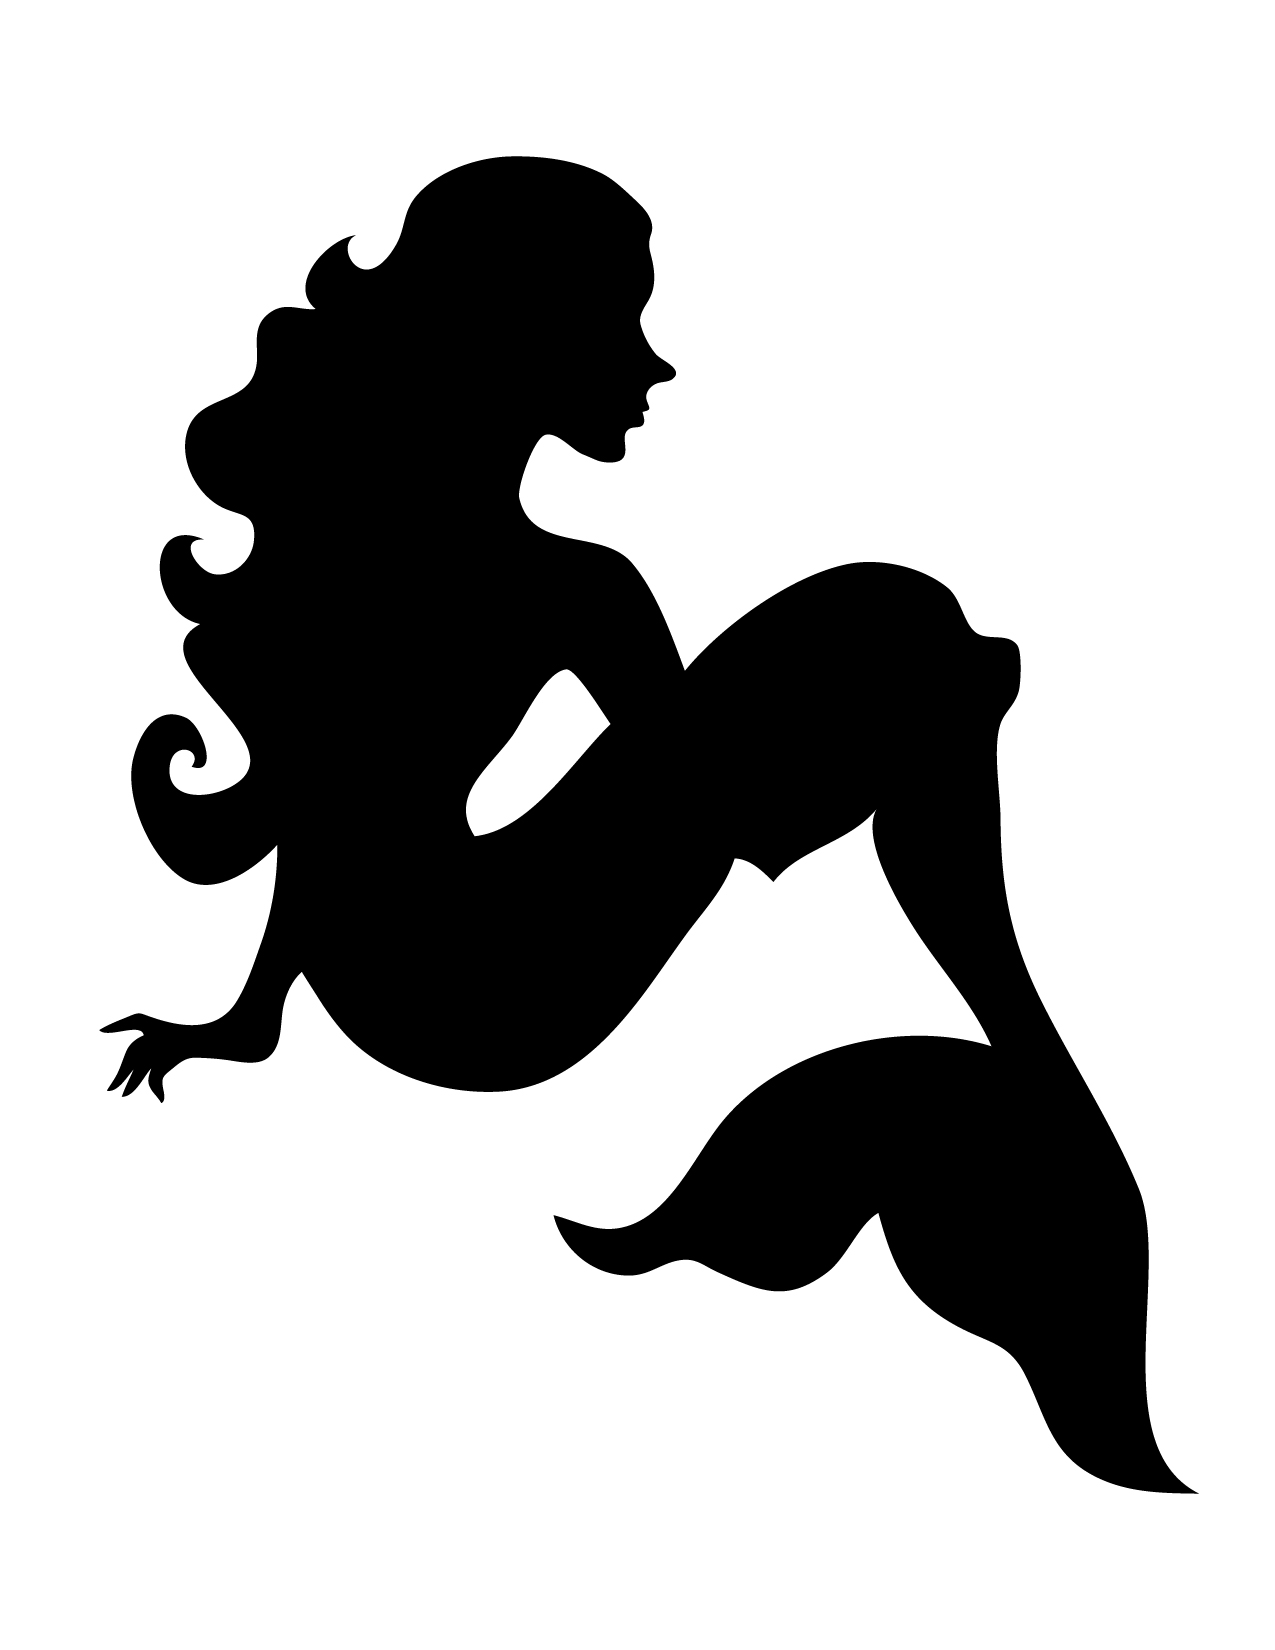 Mermaid Bedroom on Pinterest | Mermaid Silhouette, Mermaids and ...